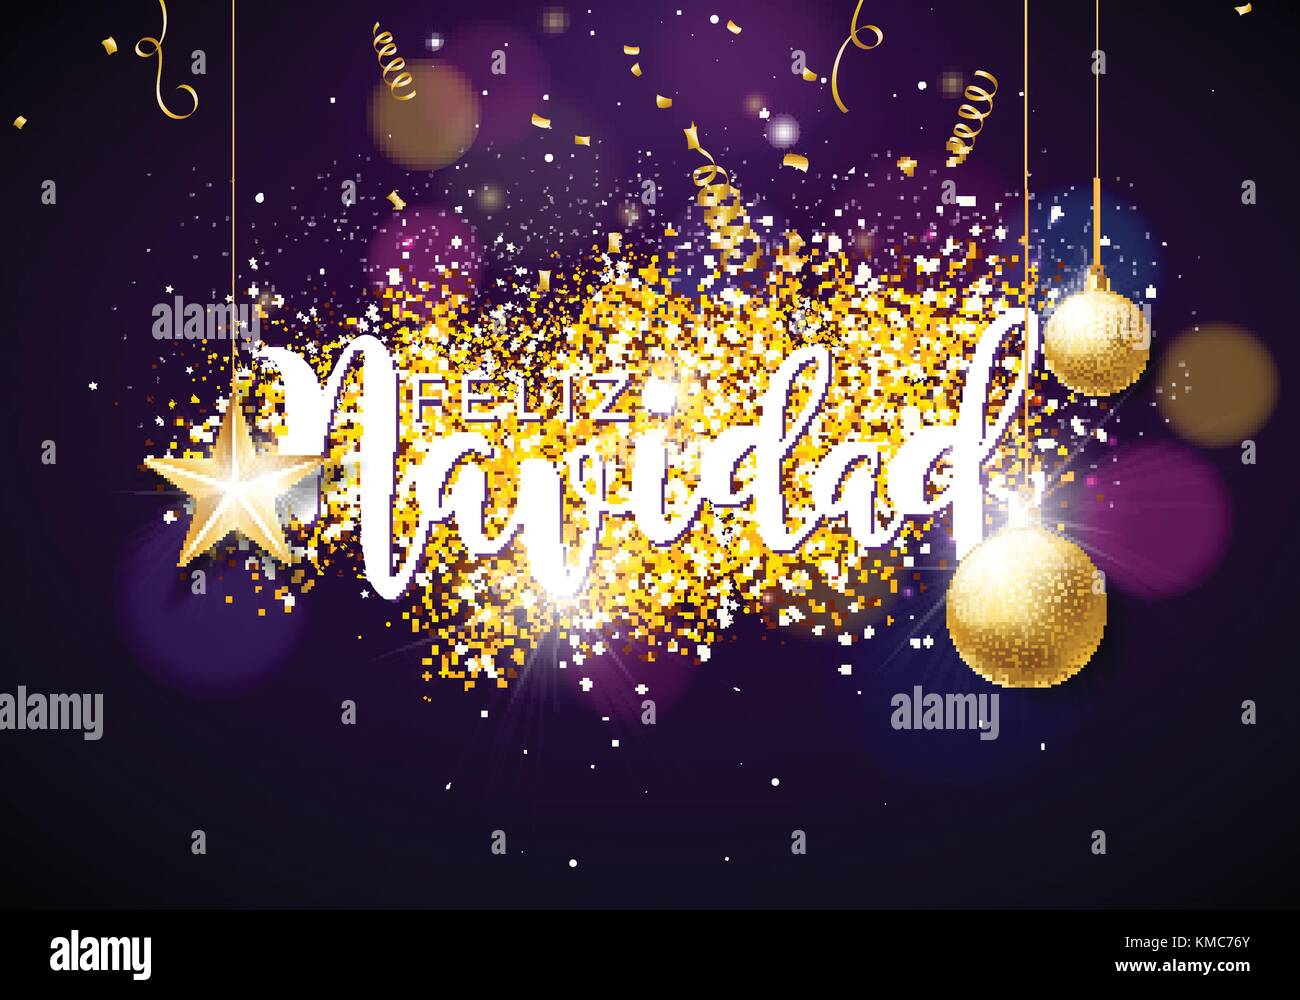 Illustrazione di natale con lo spagnolo Feliz Navidad tipografia, Palla di vetro, coriandoli, serpentine e oro carta ritagliata sulla stella brillante sfondo viola. Il design creativo per il biglietto di auguri o poster. Illustrazione Vettoriale